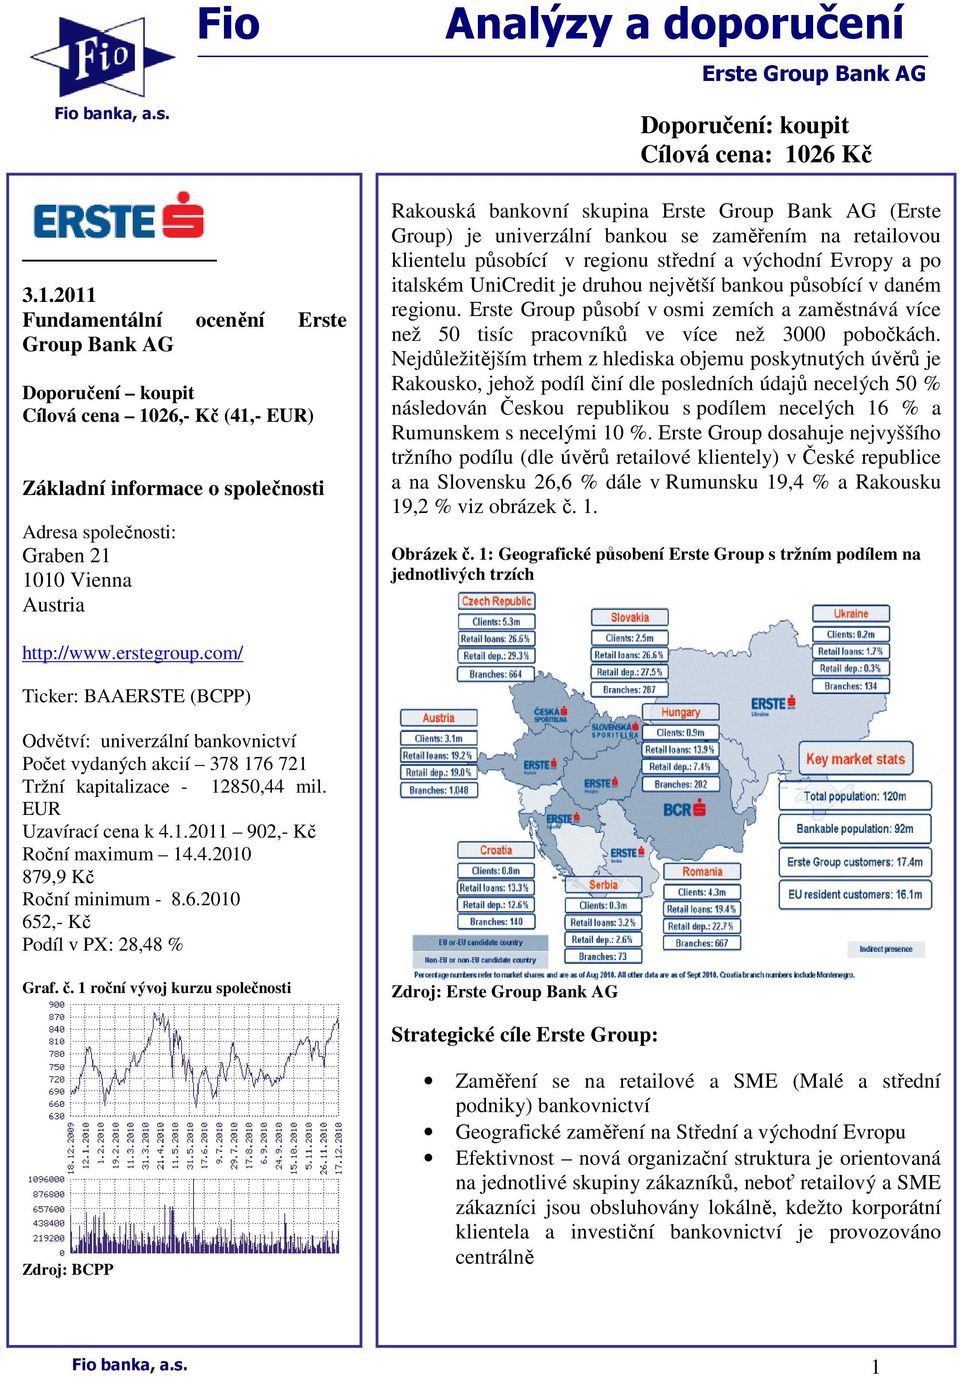 Cílová cena: 1026 Kč Rakouská bankovní skupina Erste Group Bank AG (Erste Group) je univerzální bankou se zaměřením na retailovou klientelu působící v regionu střední a východní Evropy a po italském